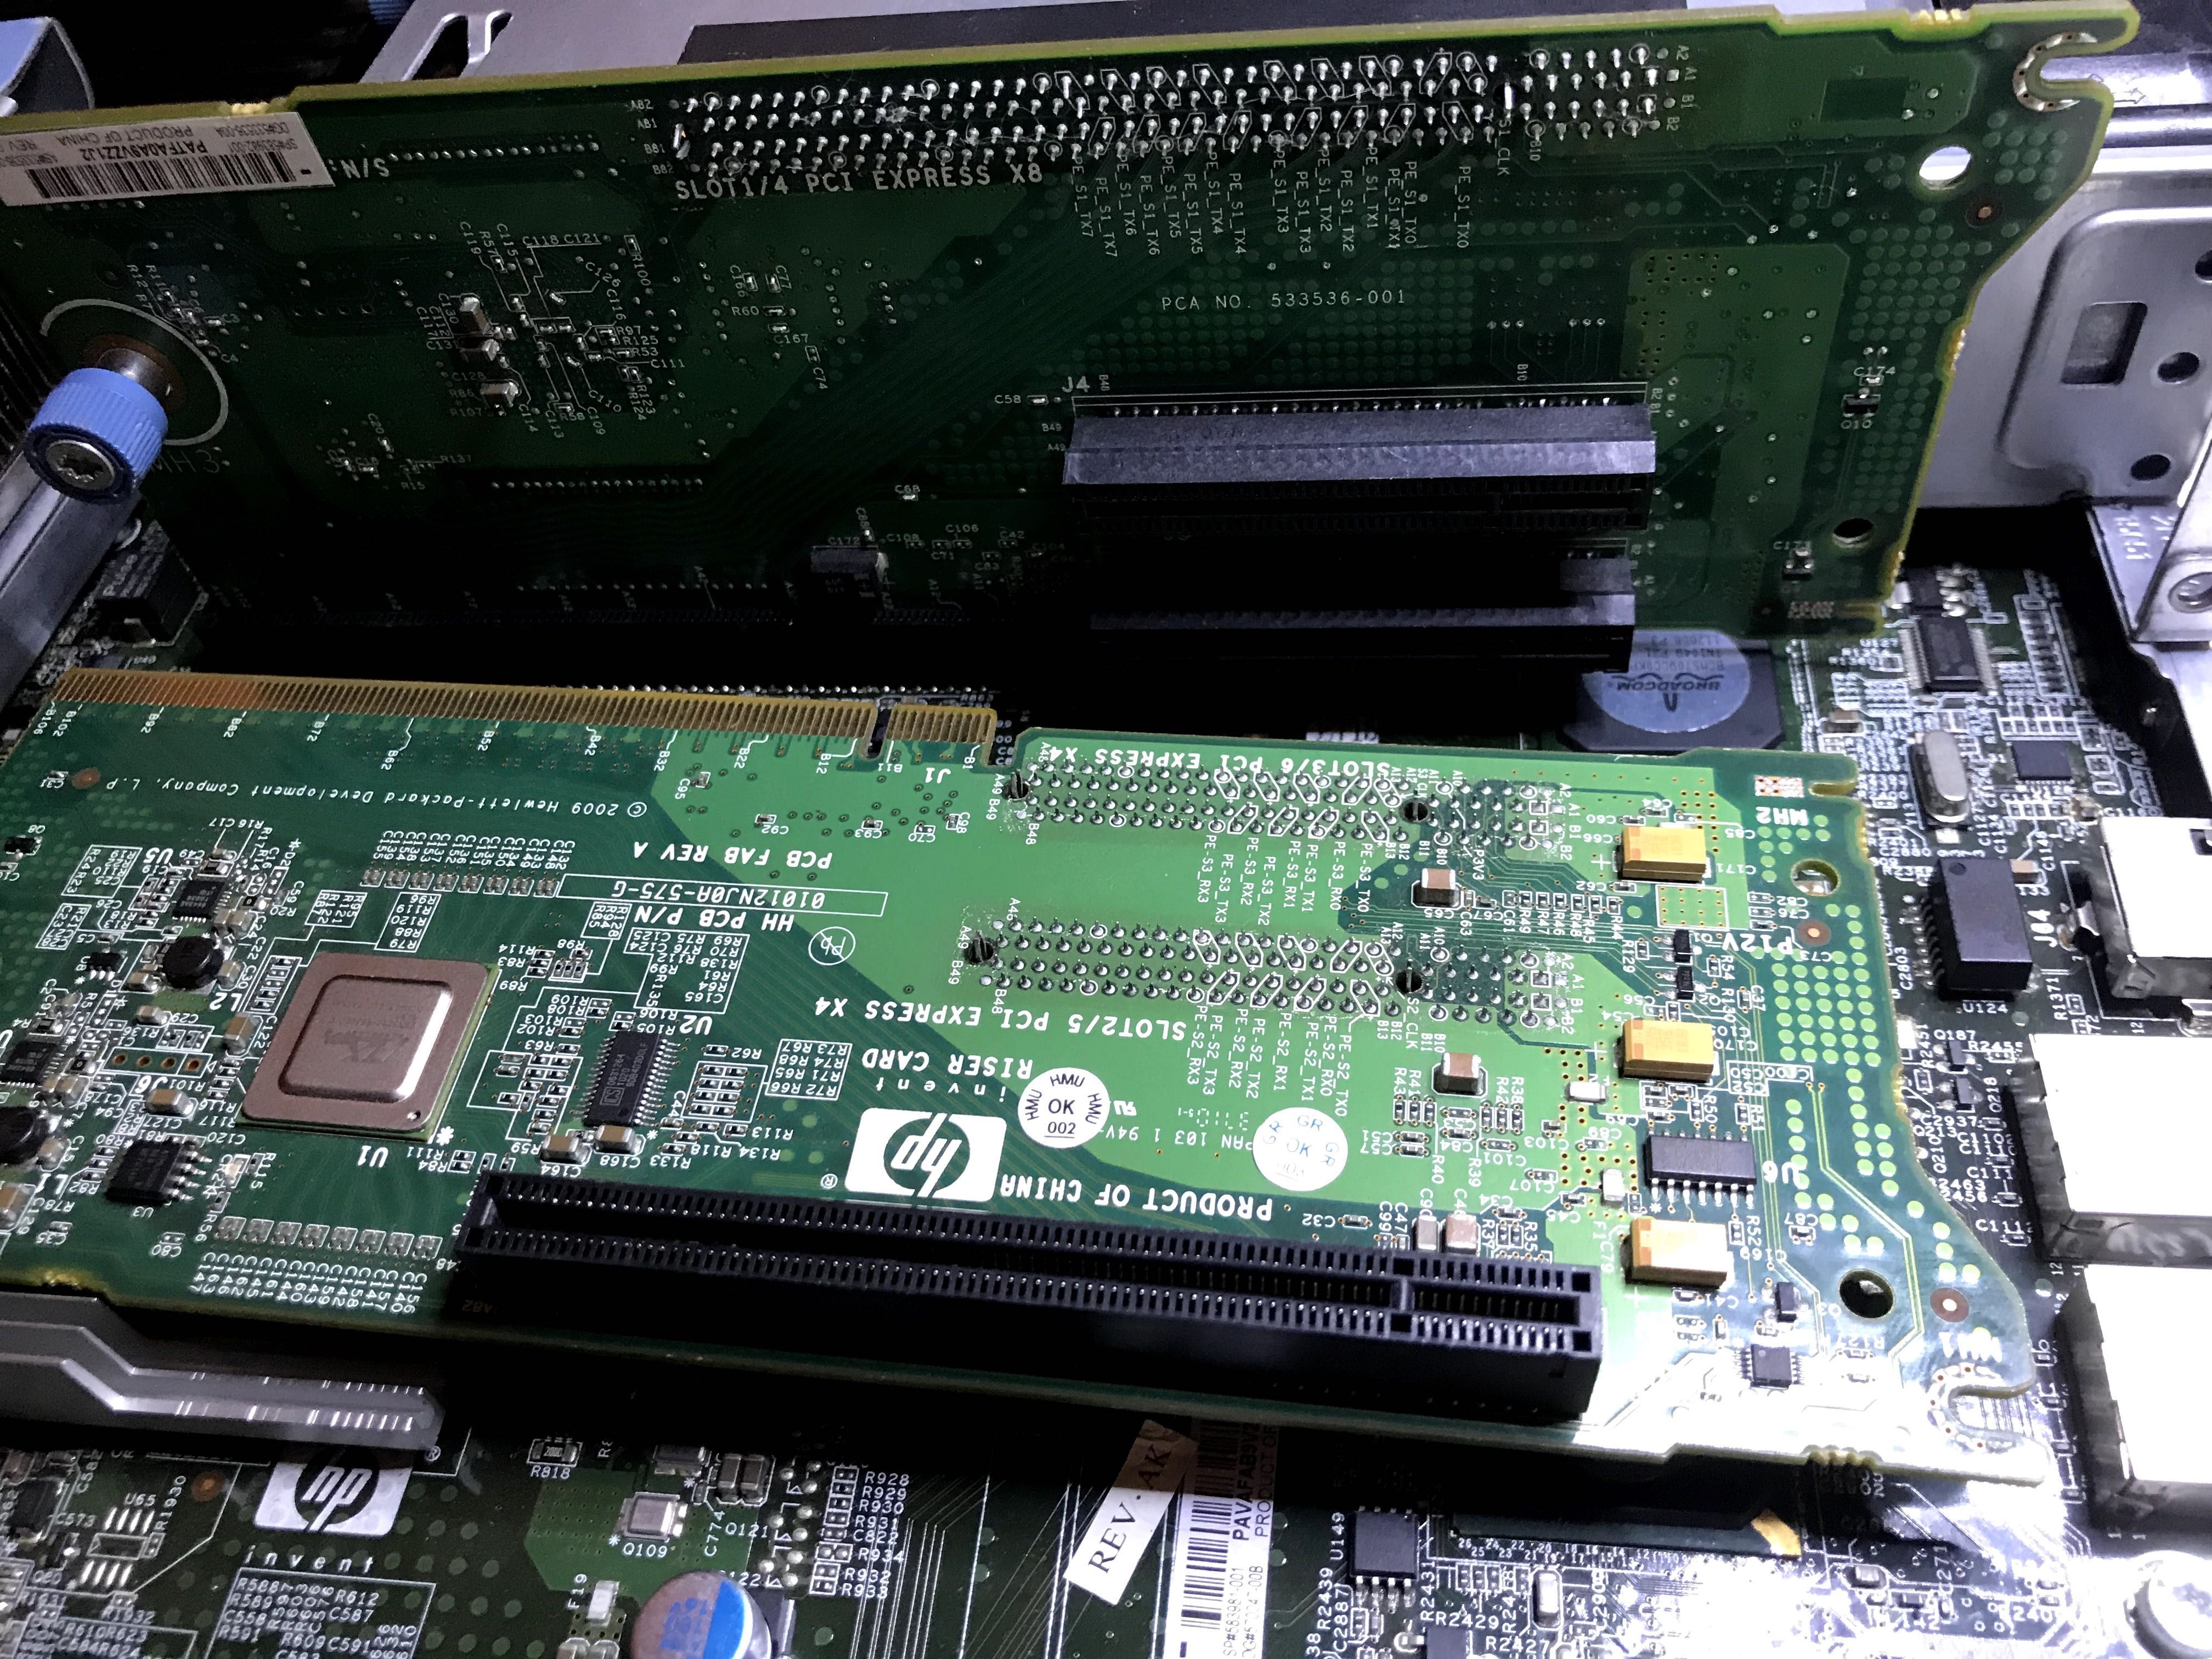 ПК на базе HP DL385 G7, сервер без корпуса, тест или фото по запросу